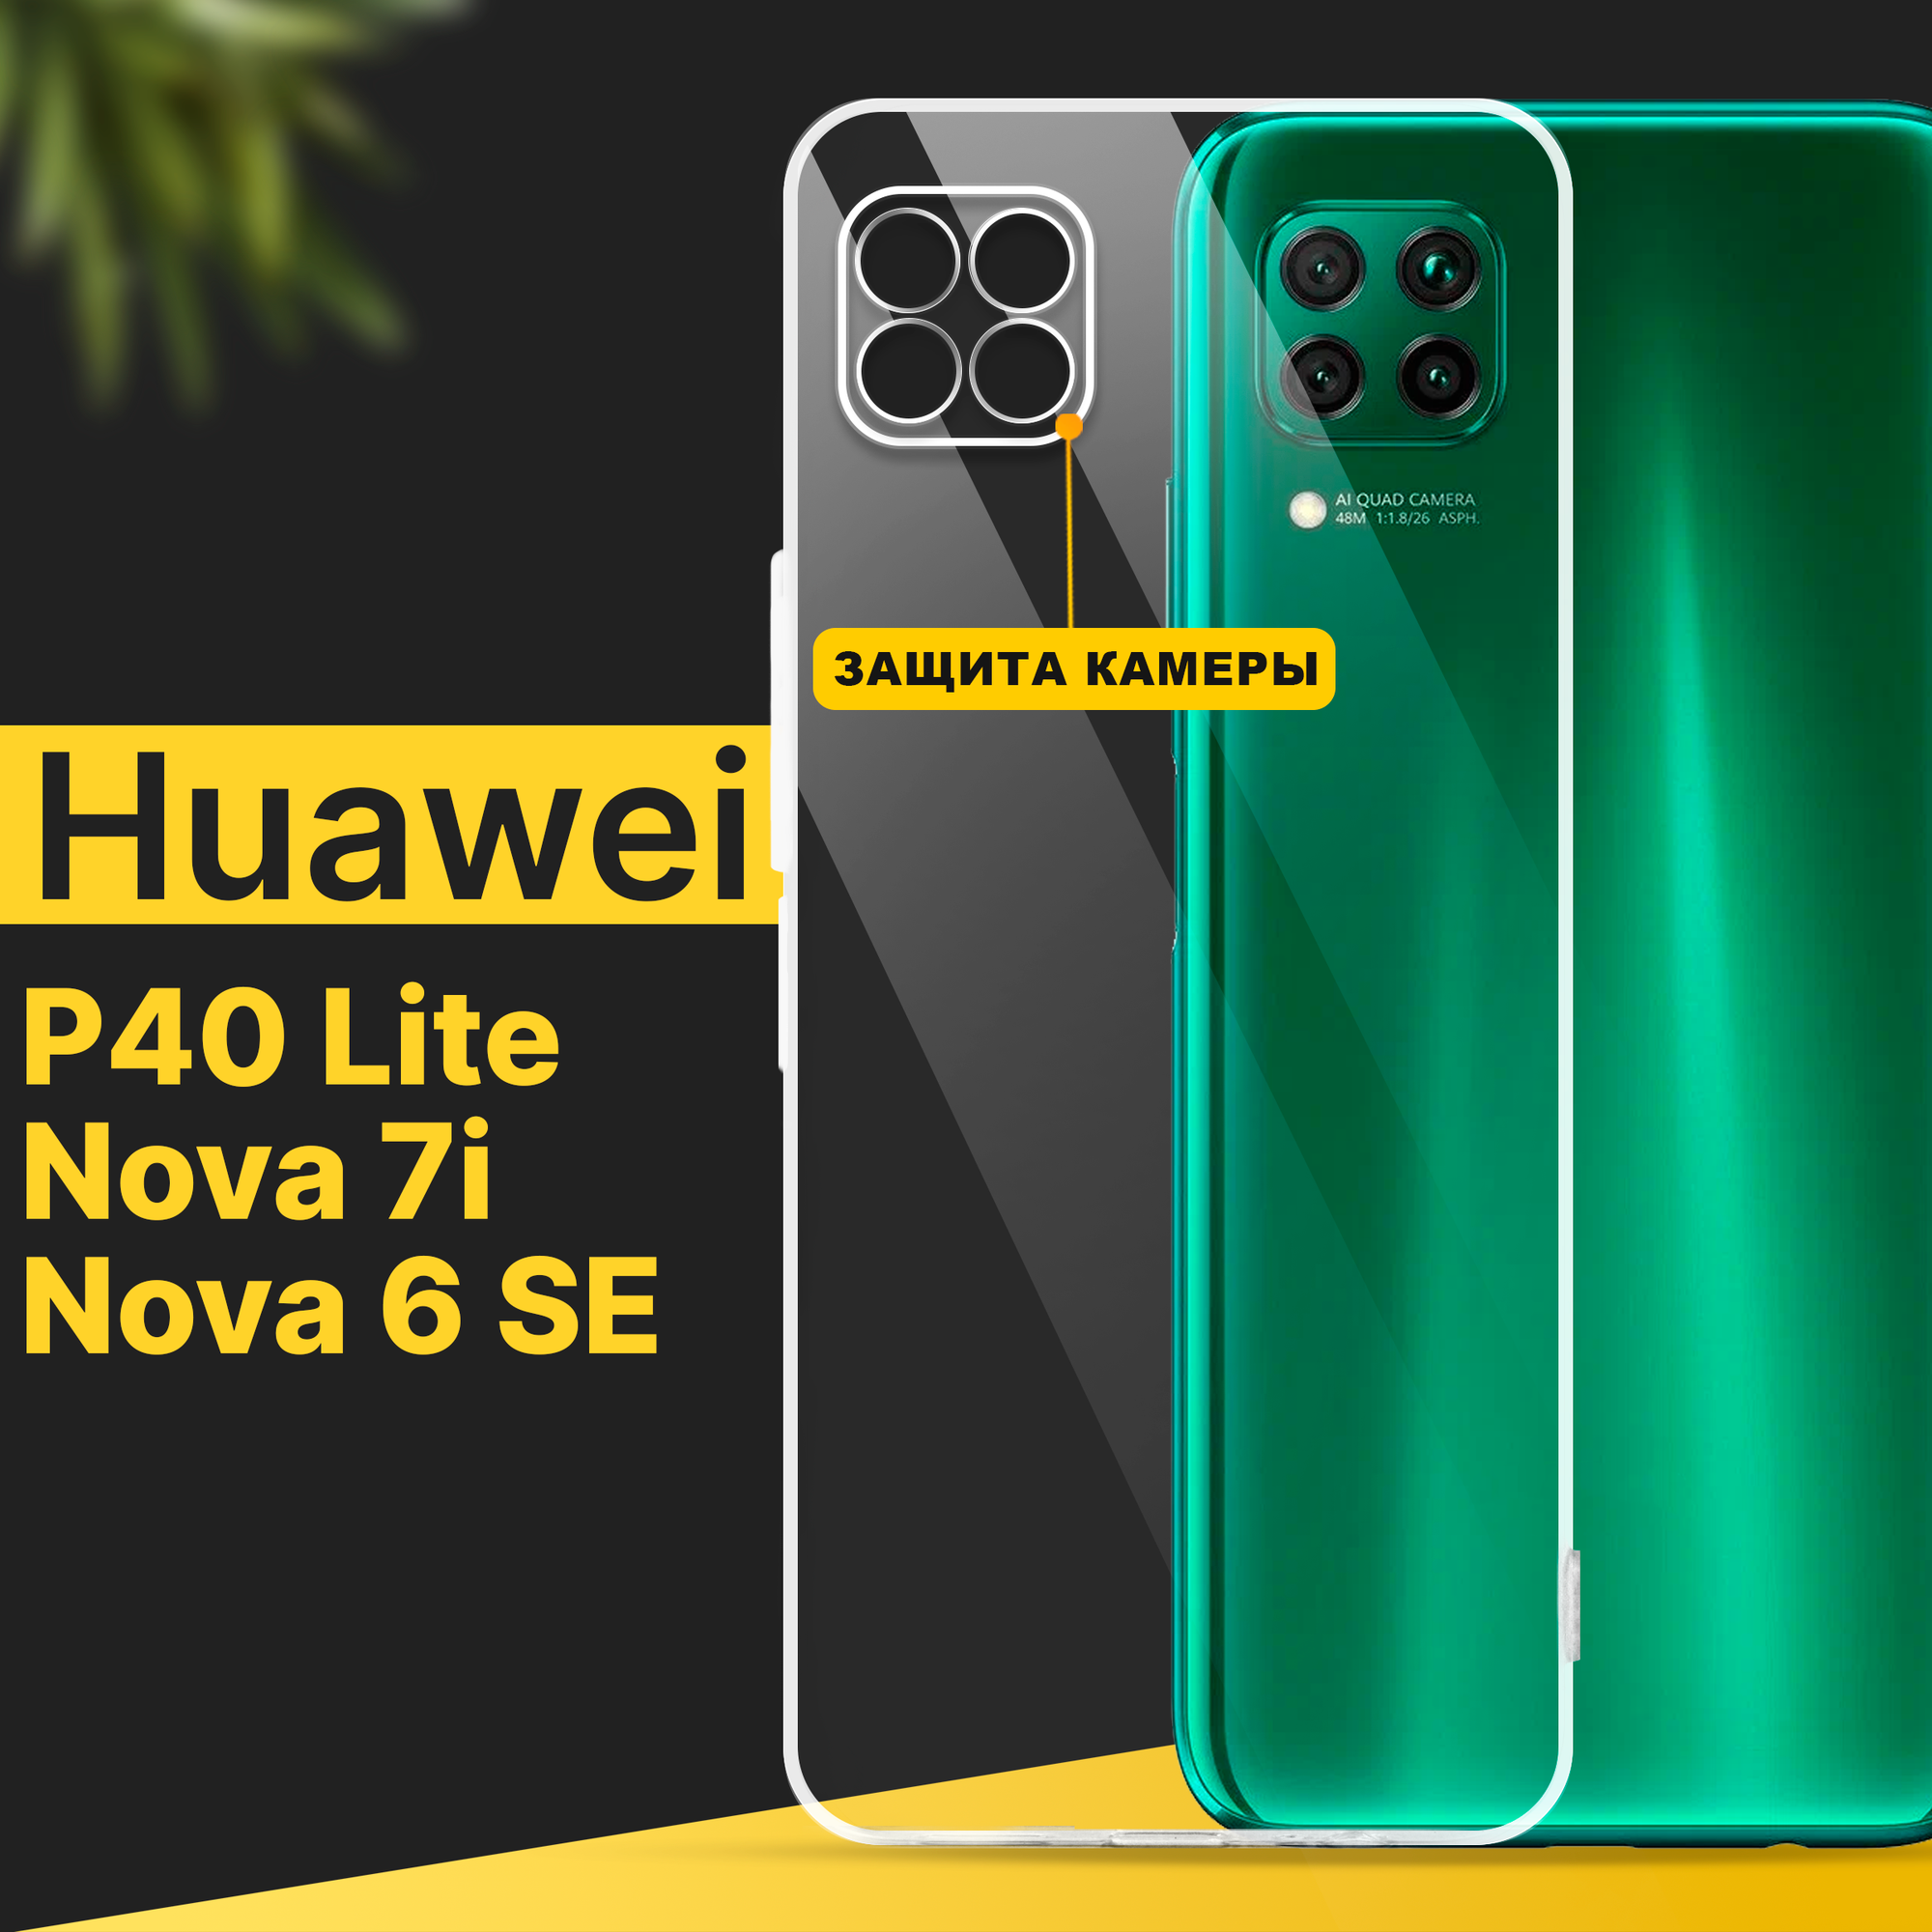 Тонкий силиконовый чехол для смартфона Huawei P40 Lite, Nova 7i и Nova 6 SE / Хуавей П40 Лайт, Нова 7 ай и Нова 6 СЕ с защитой камеры / Прозрачный